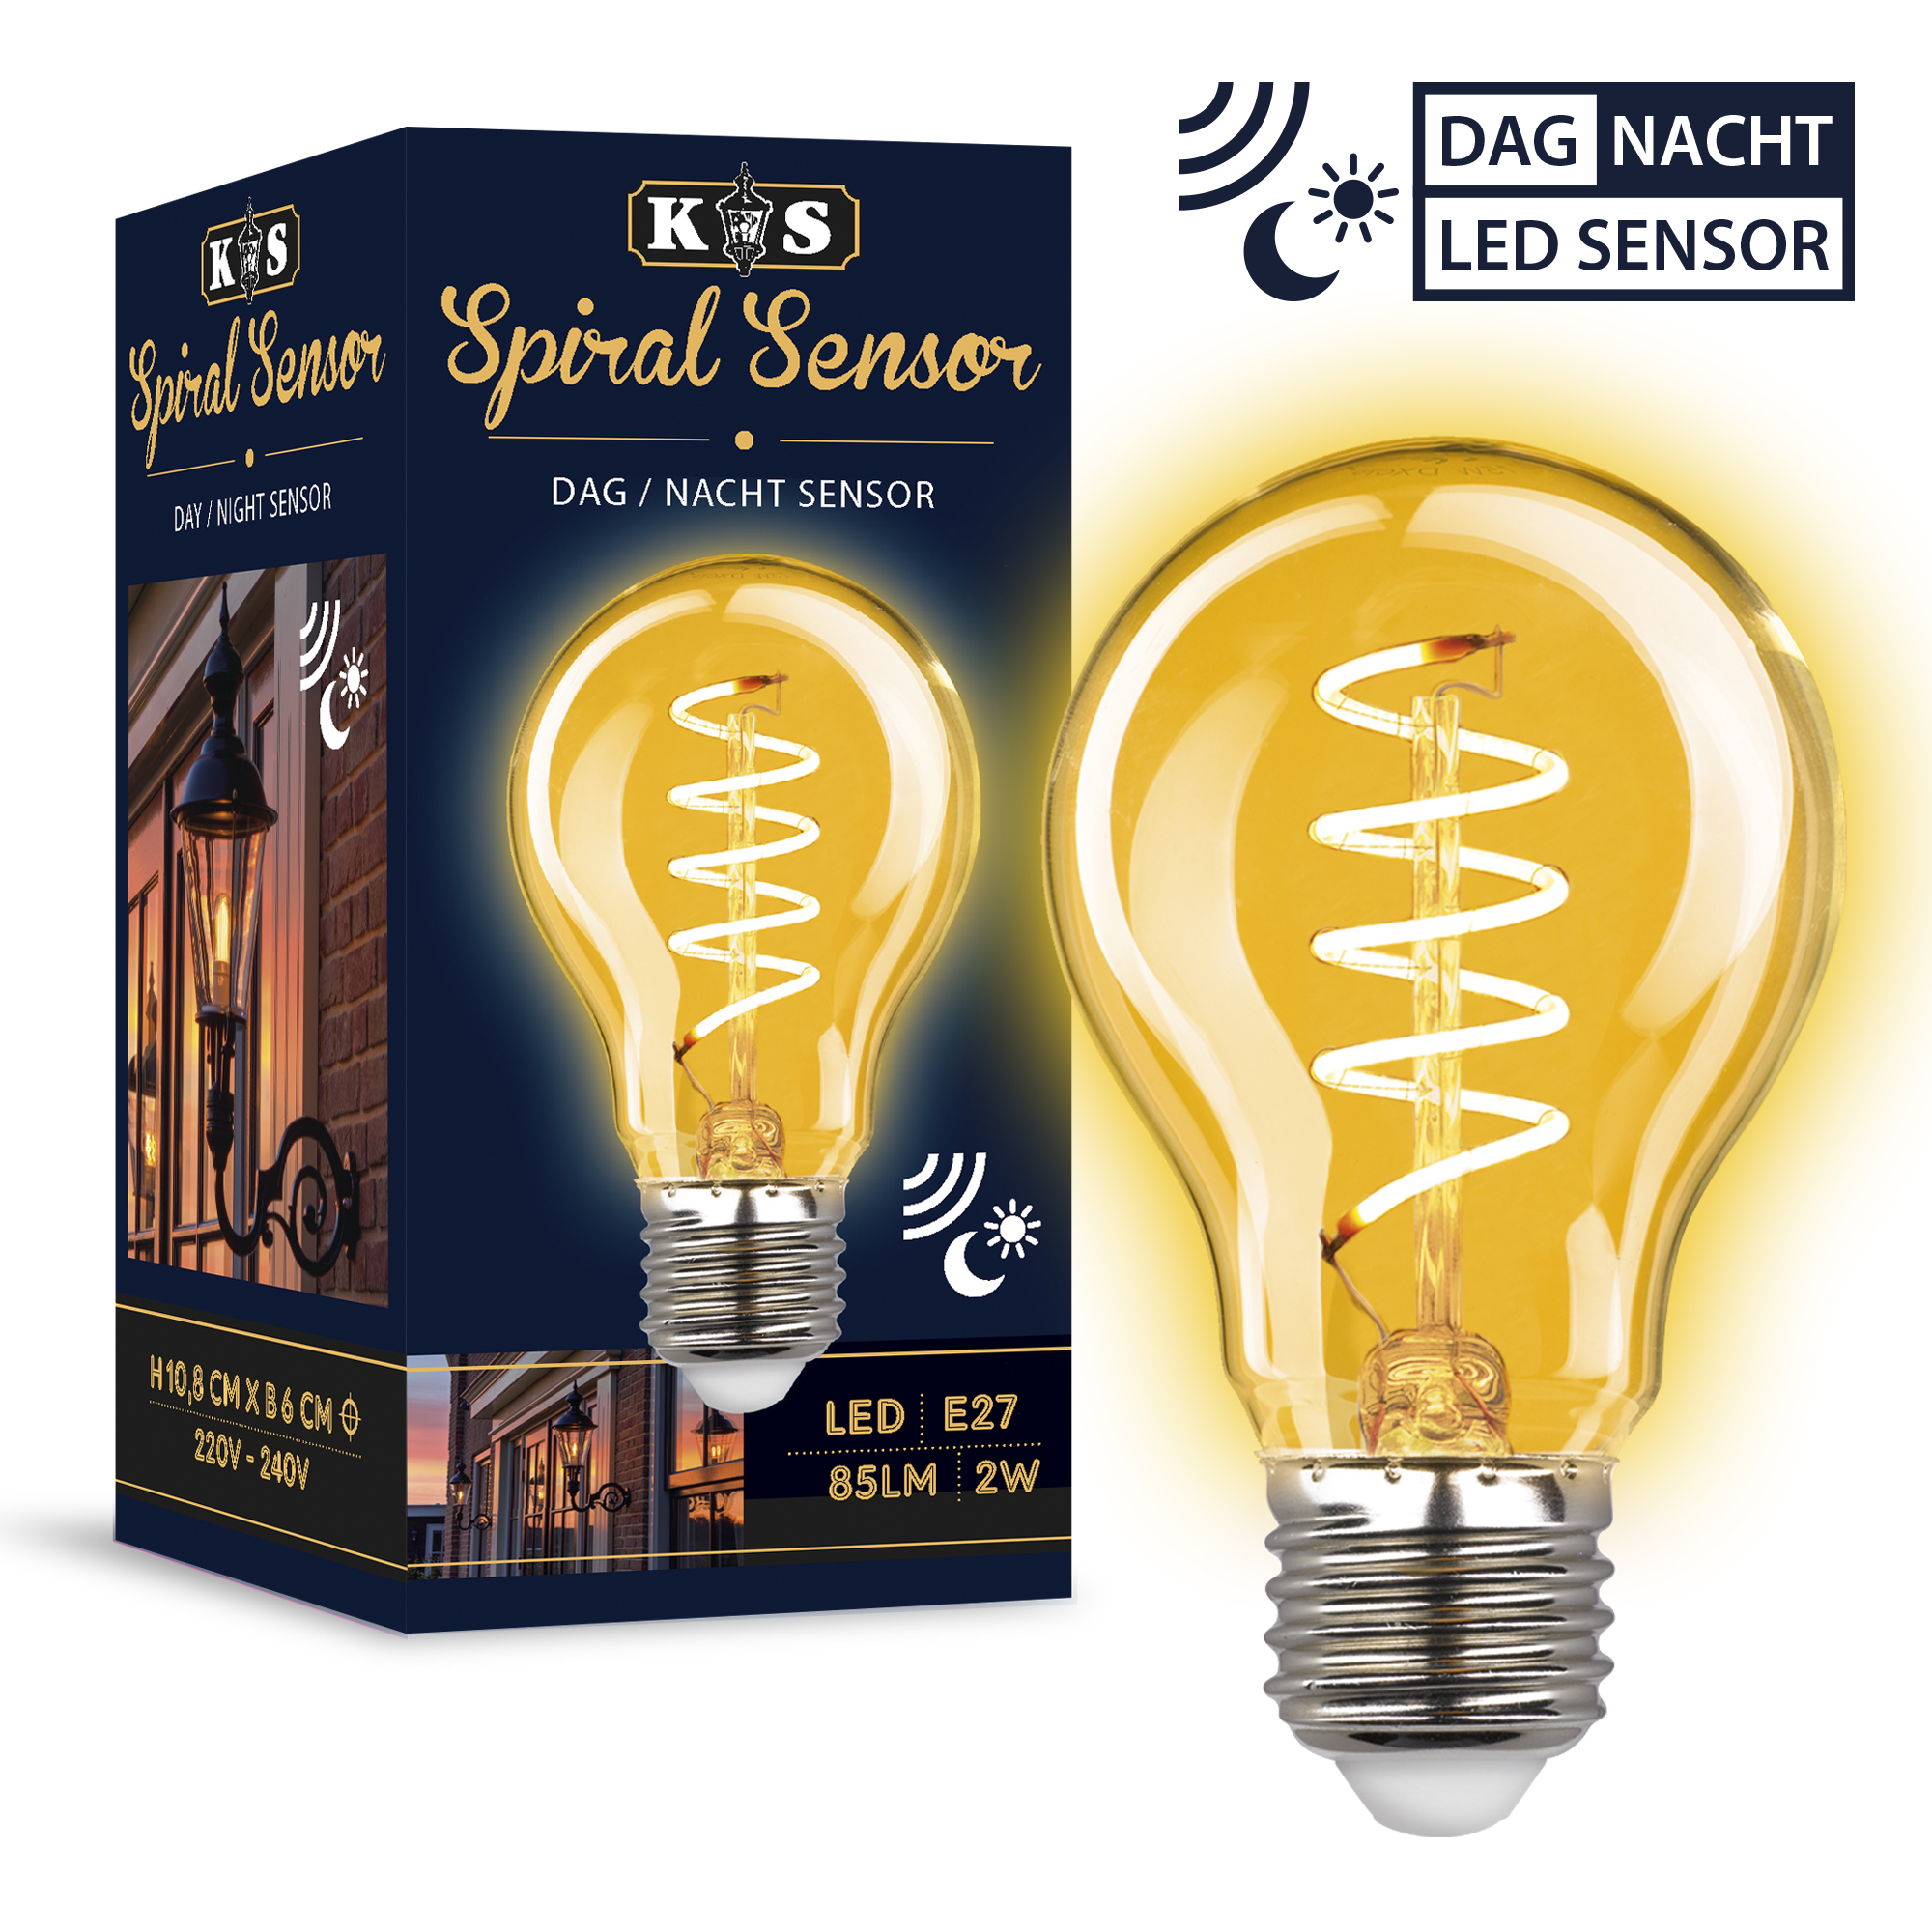 LED Dag / Nacht Sensor spiral